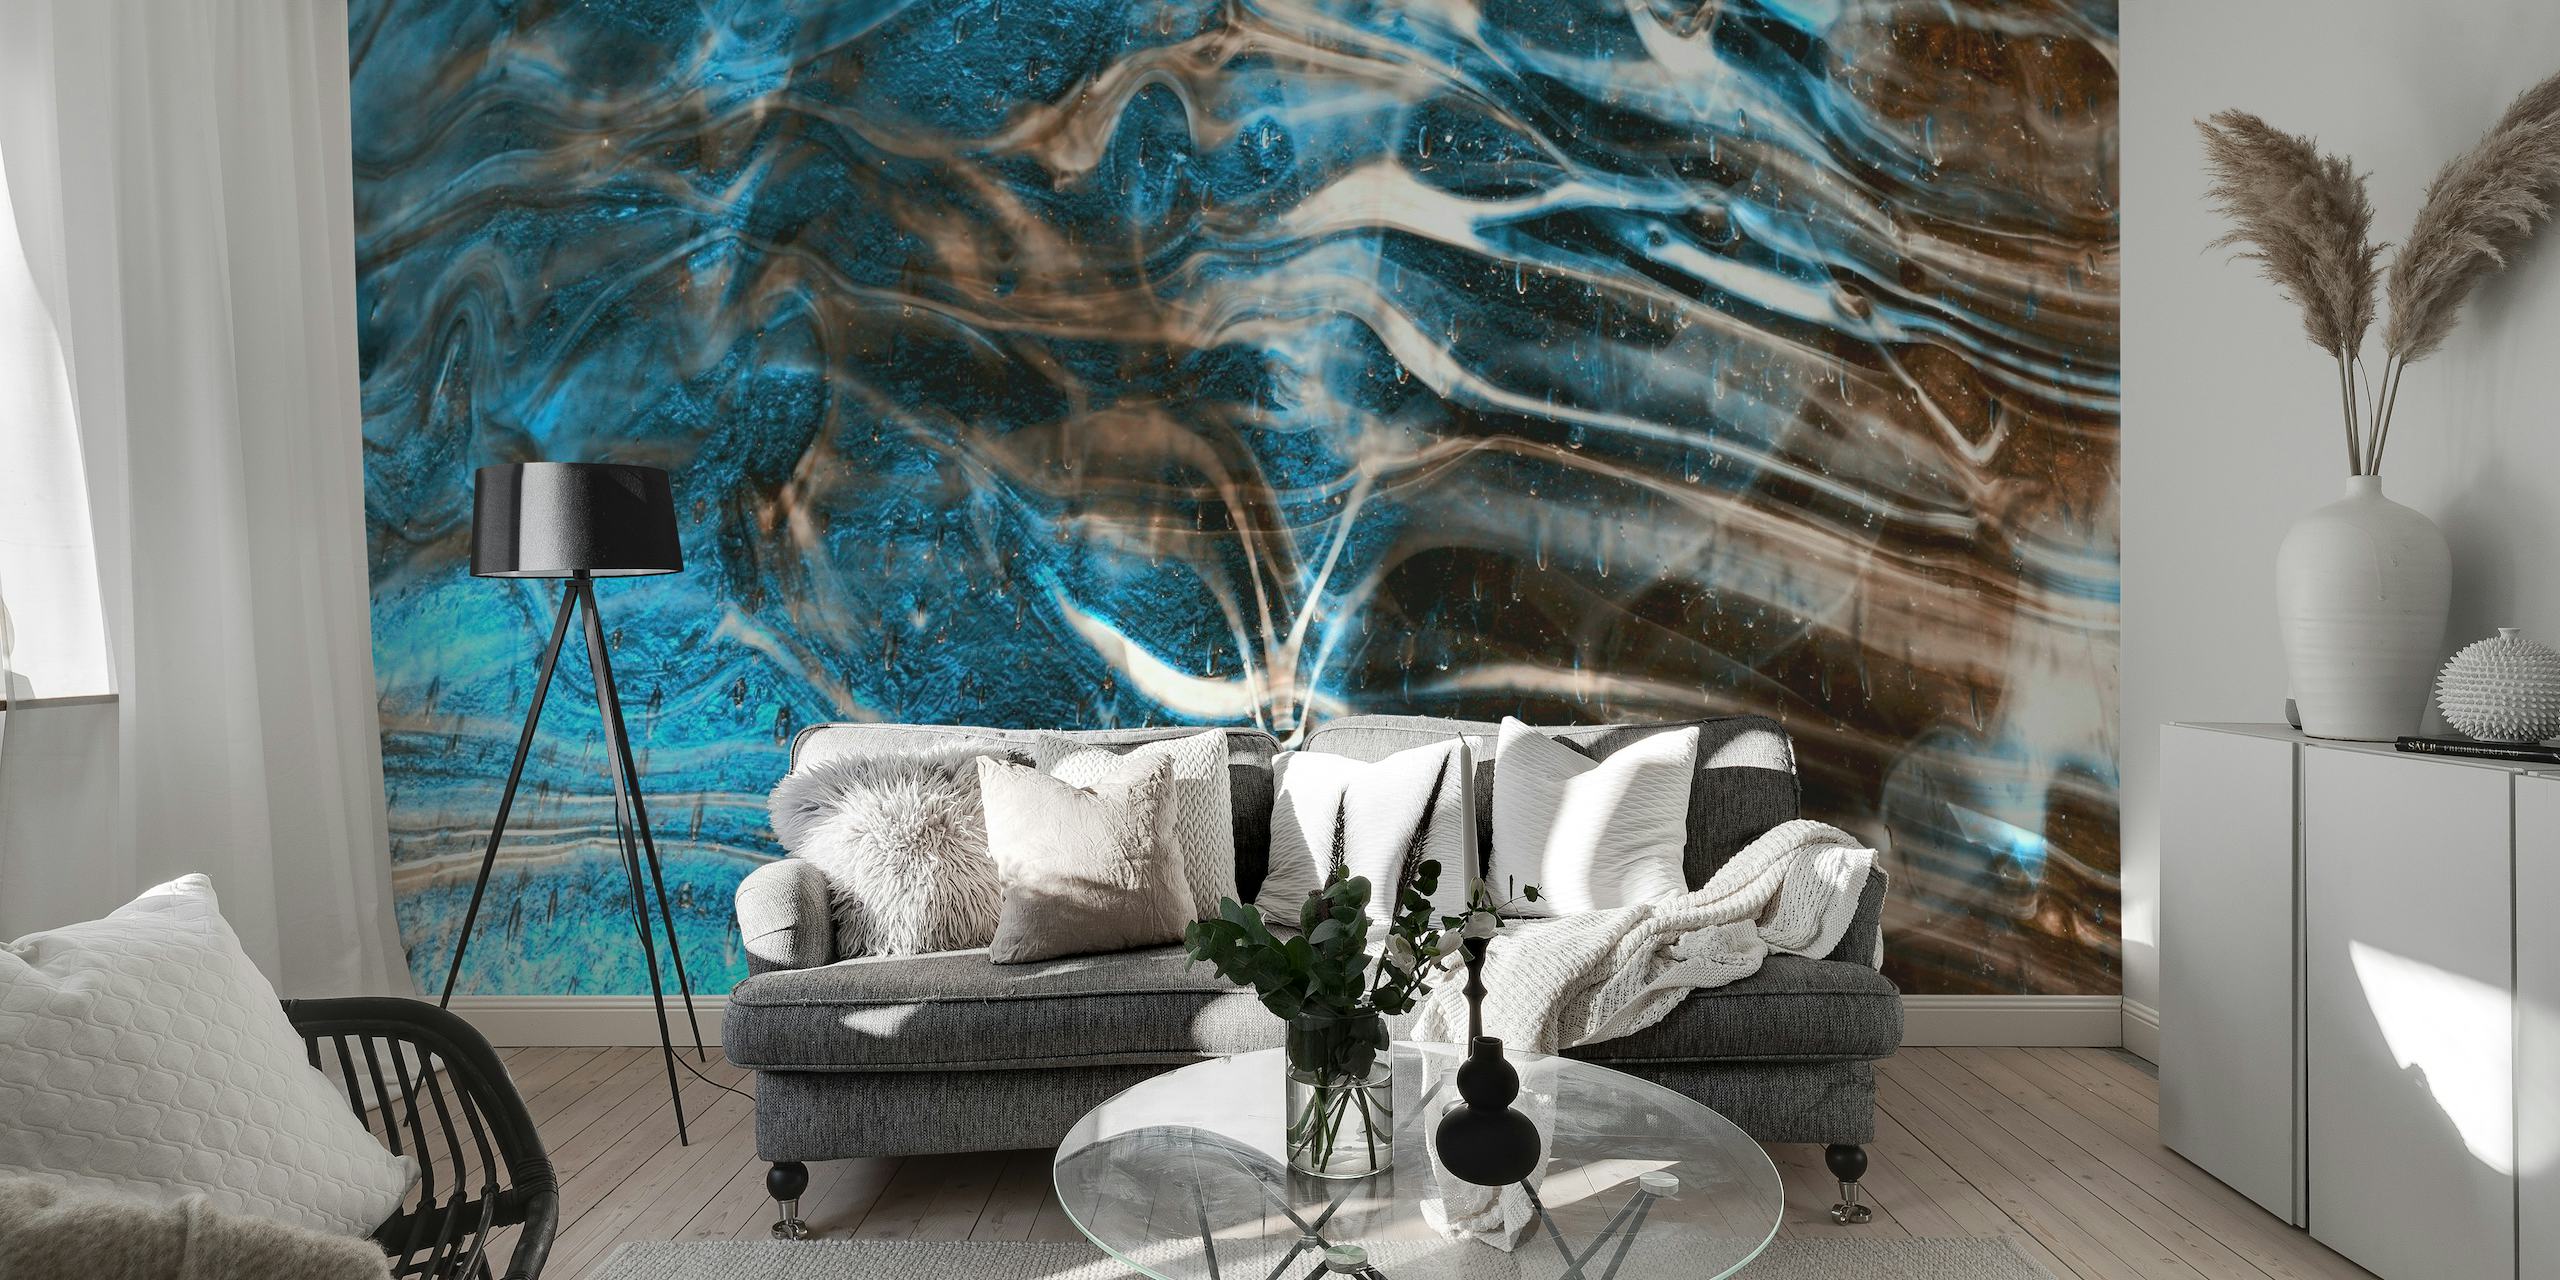 Fotomural vinílico de parede com padrão de mármore azul e marrom para um ambiente relaxante